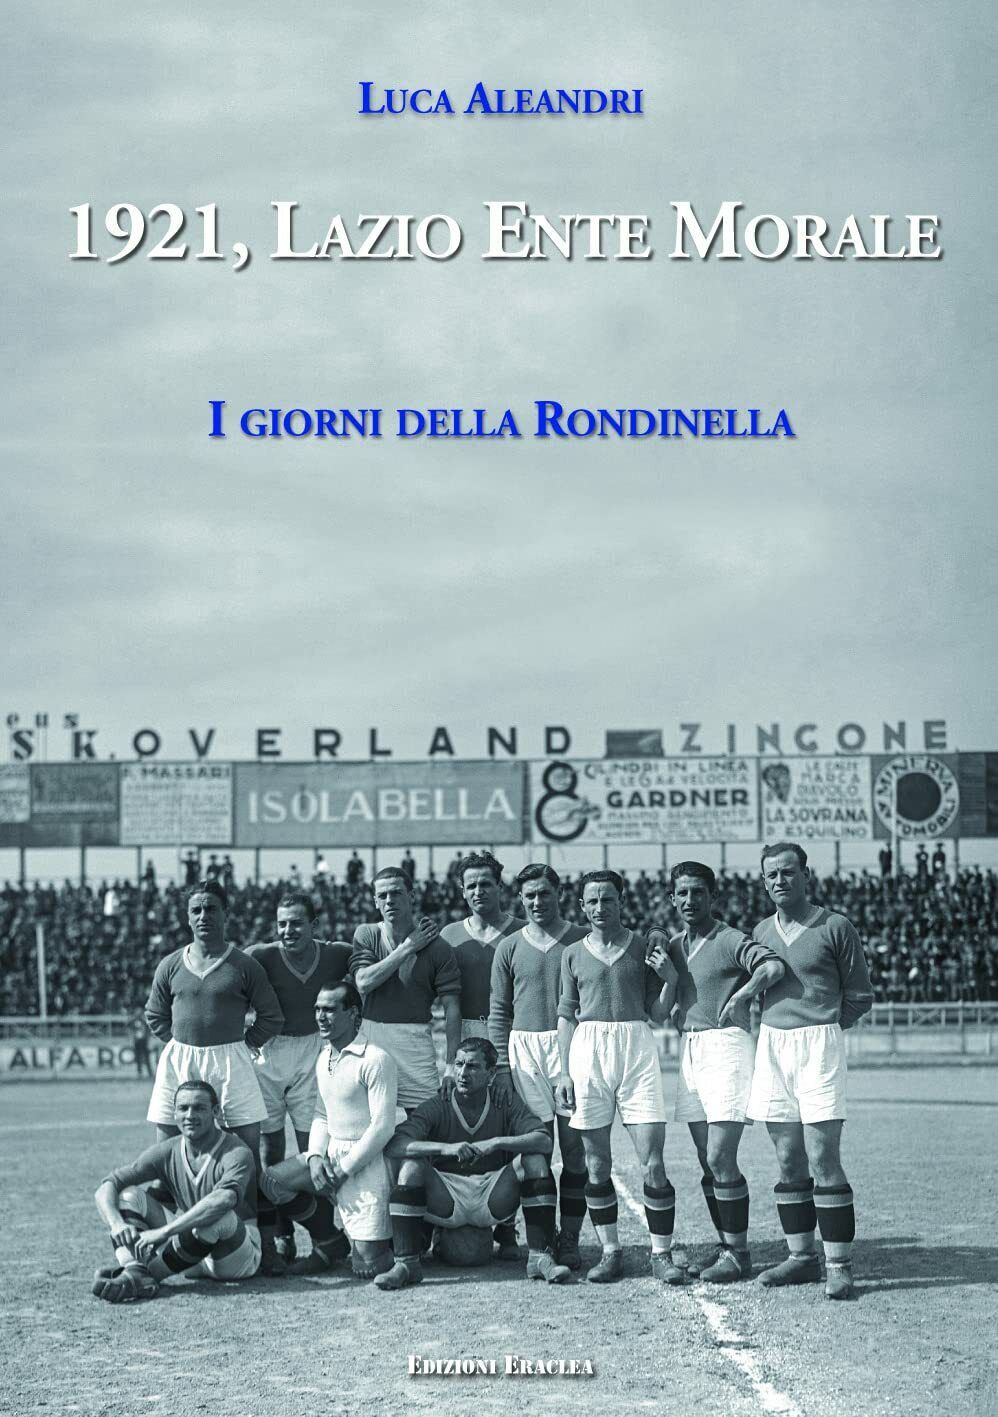 1921, Lazio Ente Morale - Luca Aleandri - Eraclea, 2021